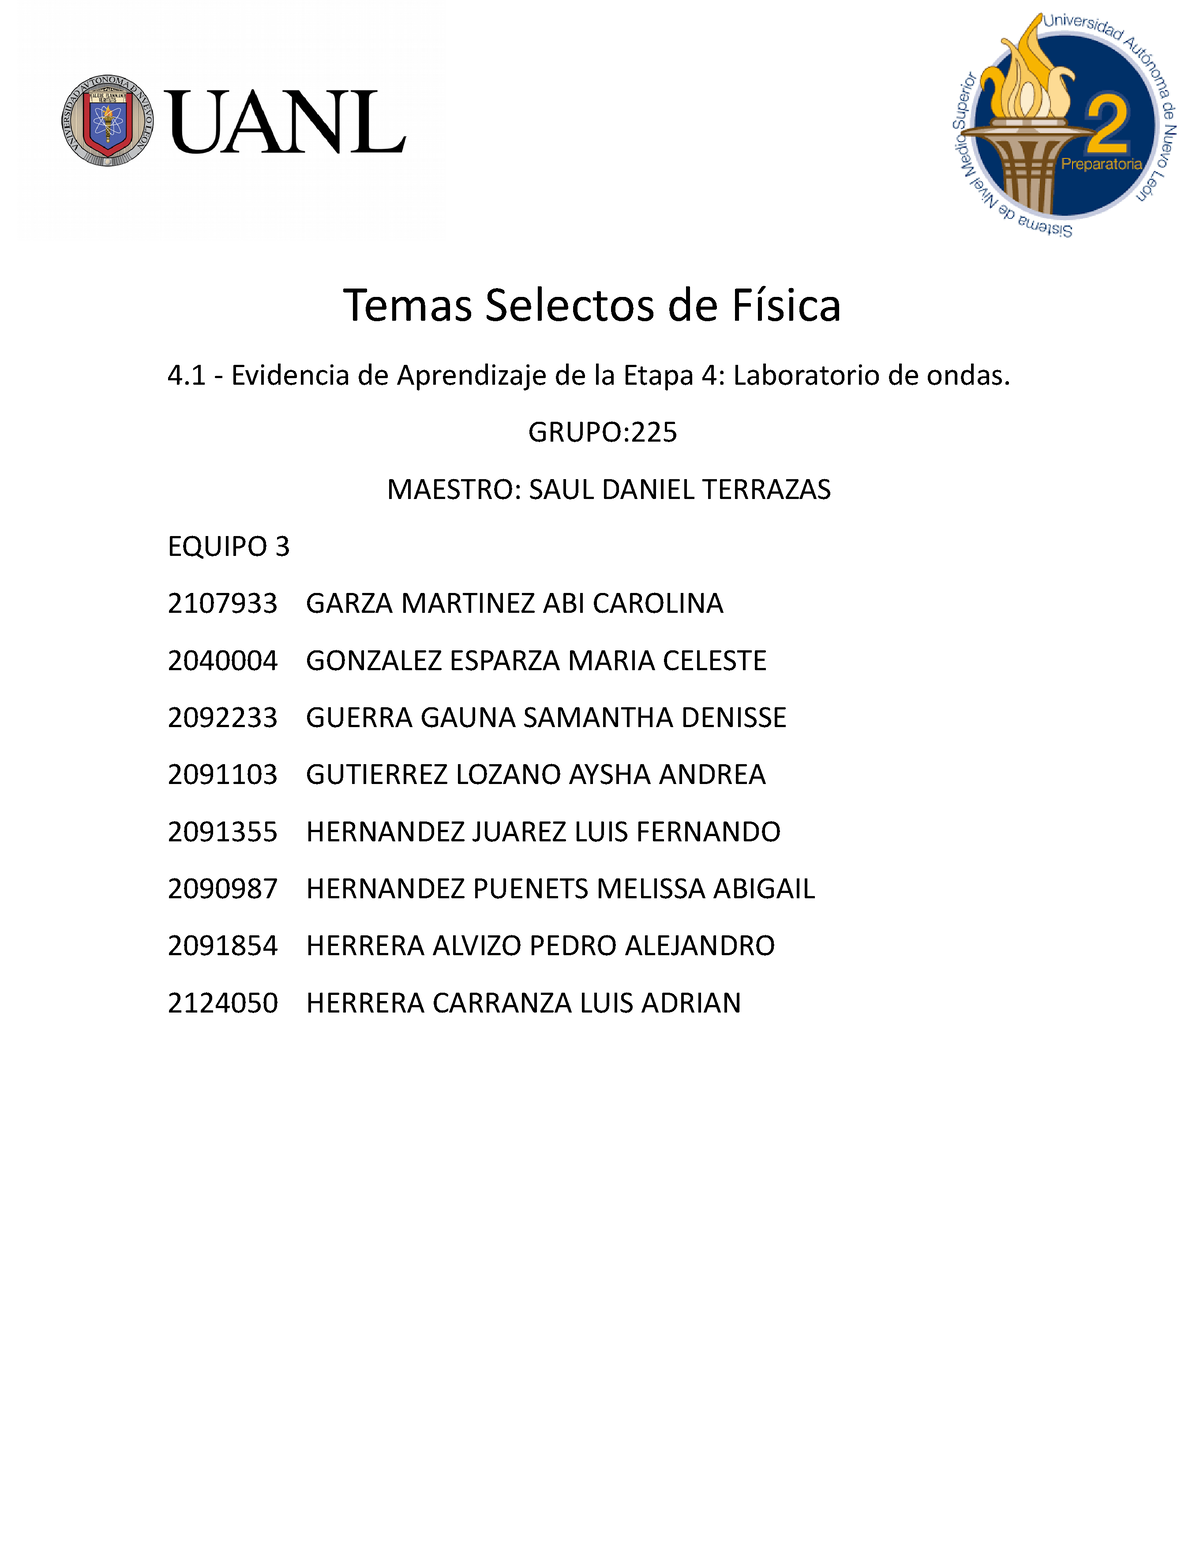 Temas Selectos De Física Grupo Maestro Saul Daniel Terrazas Equipo 3 2107933 Garza Martinez 2309